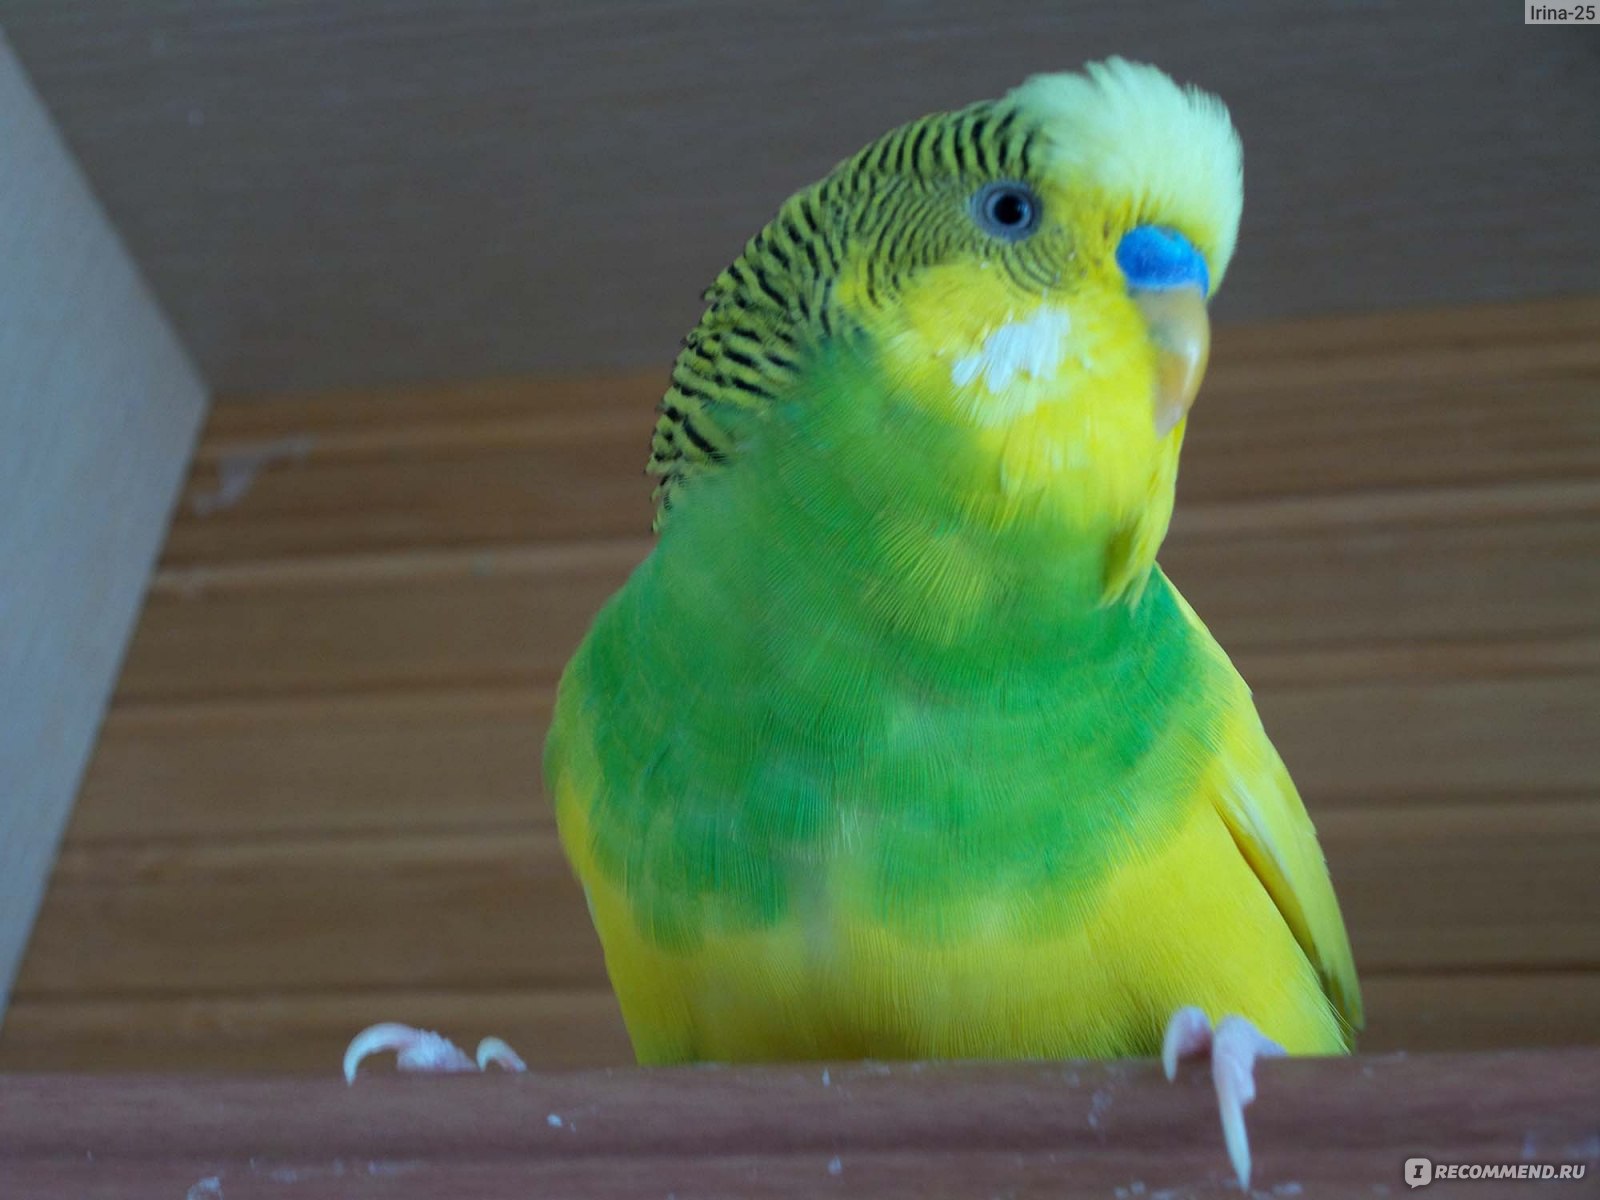 Симптомы последствий длительного поноса у попугая